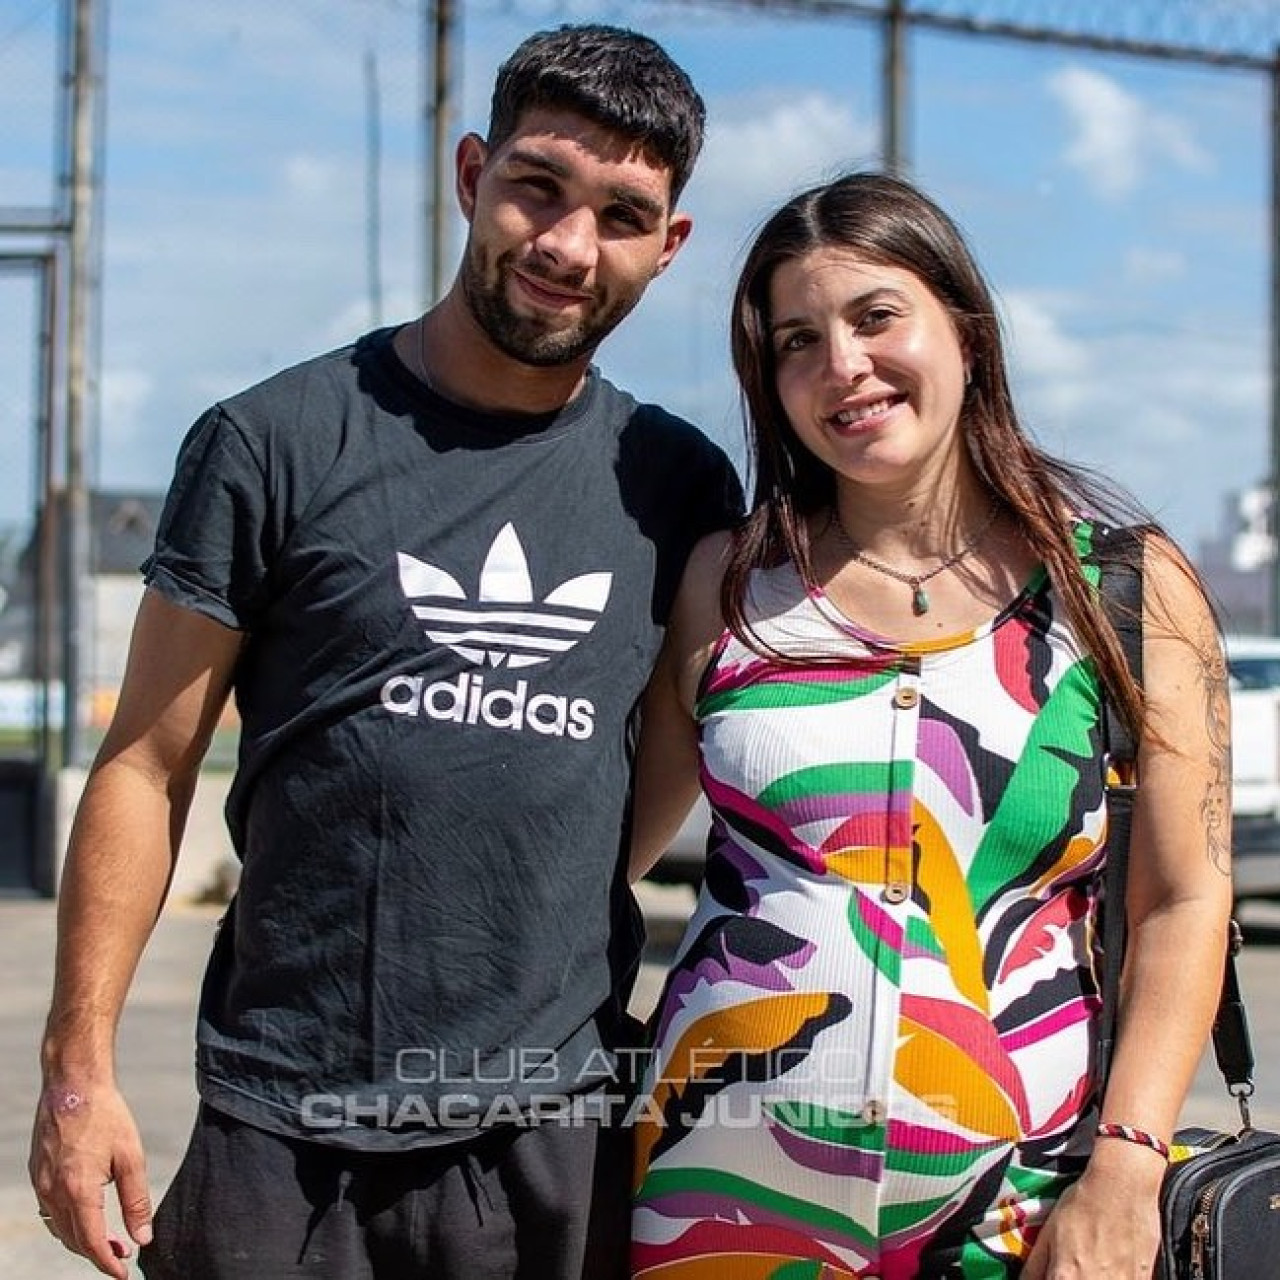 Luciano Perdomo y su mujer Sofía en Chacarita. Foto: Instagram @chacaoficial